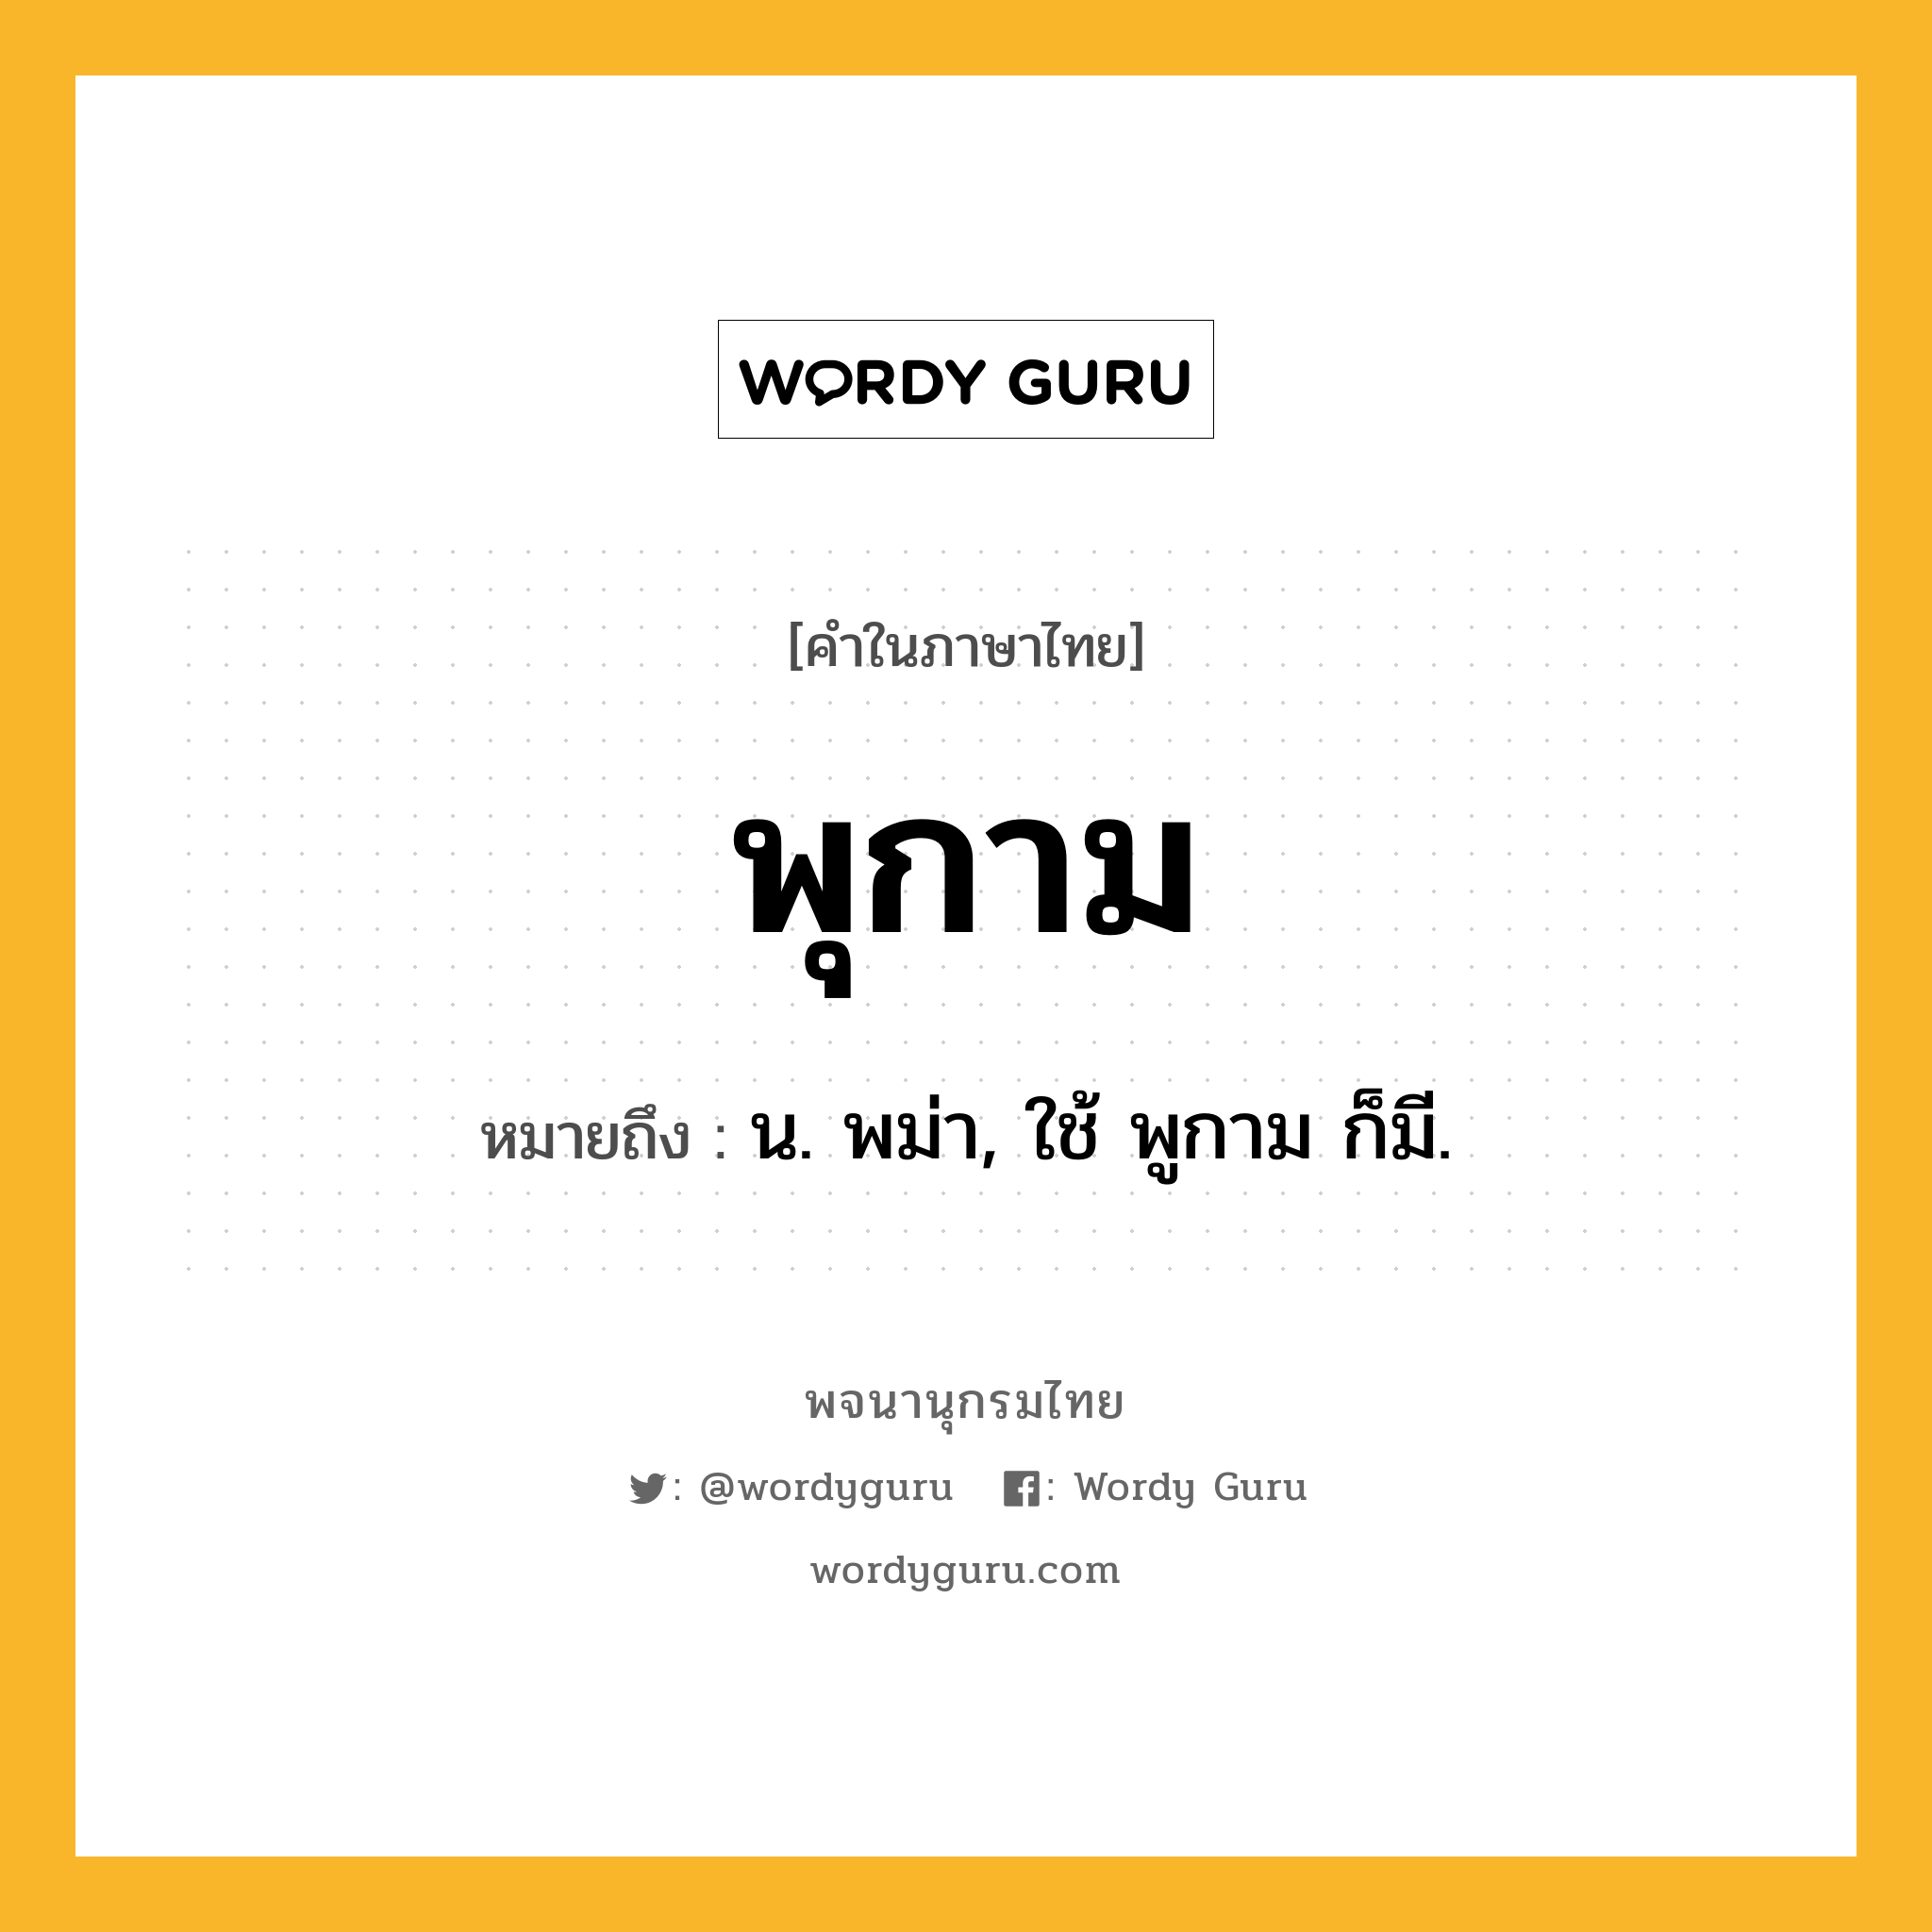 พุกาม หมายถึงอะไร?, คำในภาษาไทย พุกาม หมายถึง น. พม่า, ใช้ พูกาม ก็มี.